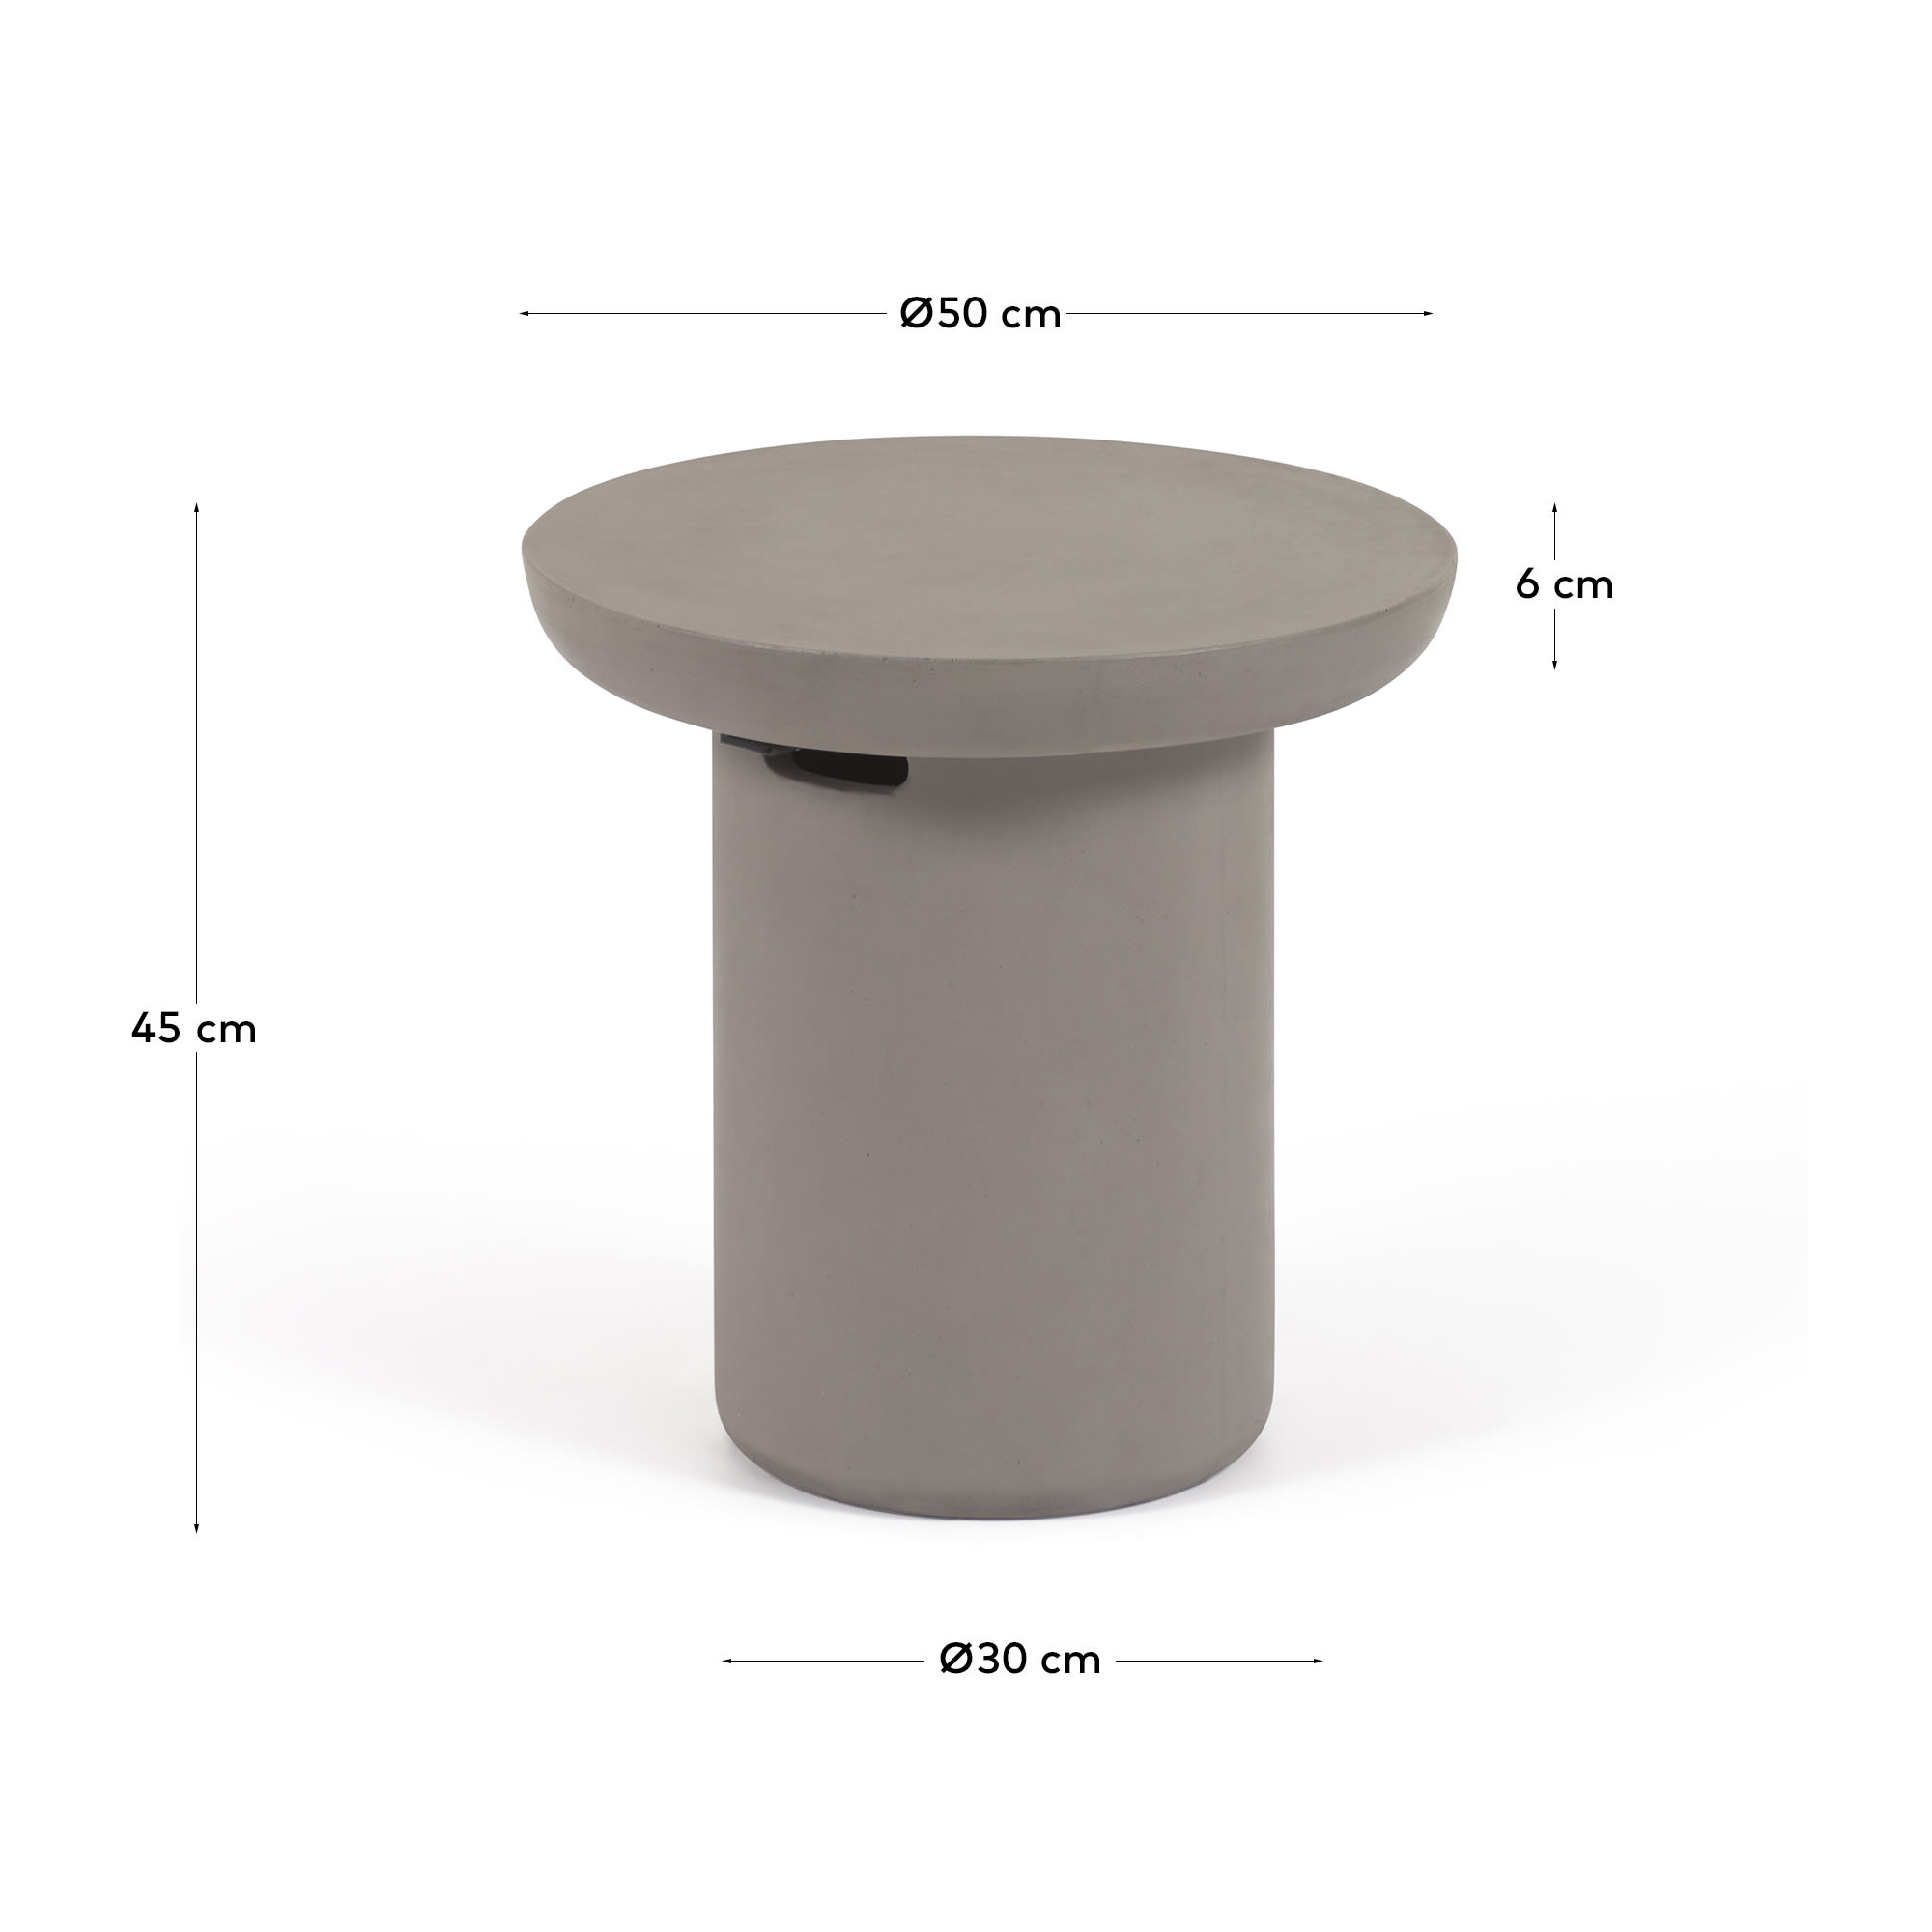 타미 콘크리트 원형 야외 사이드 테이블 Ø 50 cm - 크기